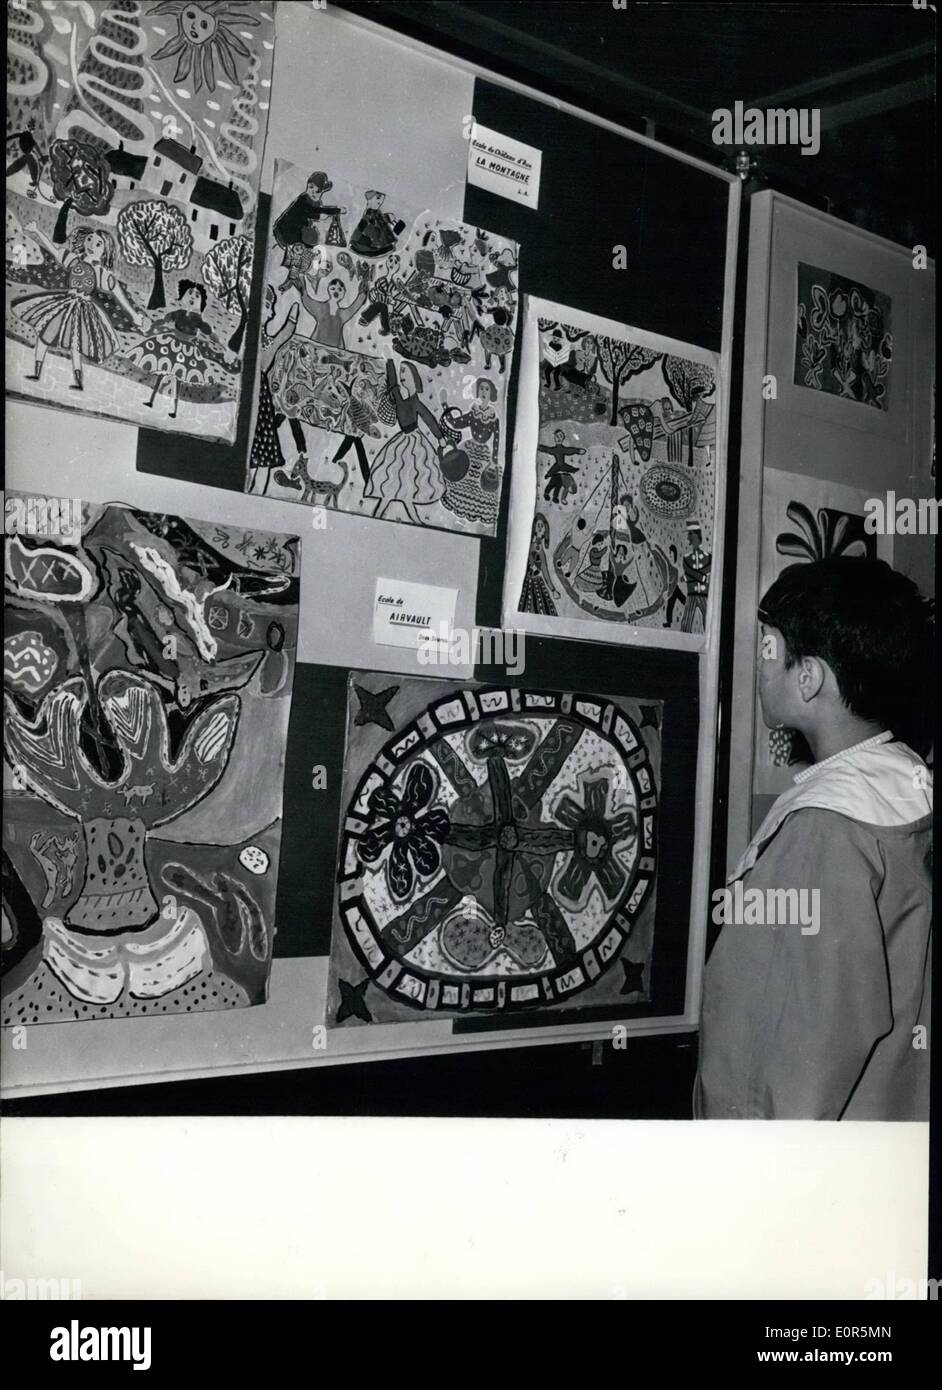 Apr. 04, 1958 - Bambini disegni in mostra : la Scuola di disegno per bambini vengono ora esposti a Parigi, al museo della scuola. La foto mostra un giovane visitatore di ammirare i dipinti dei suoi piccoli compagni di scuola. Foto Stock